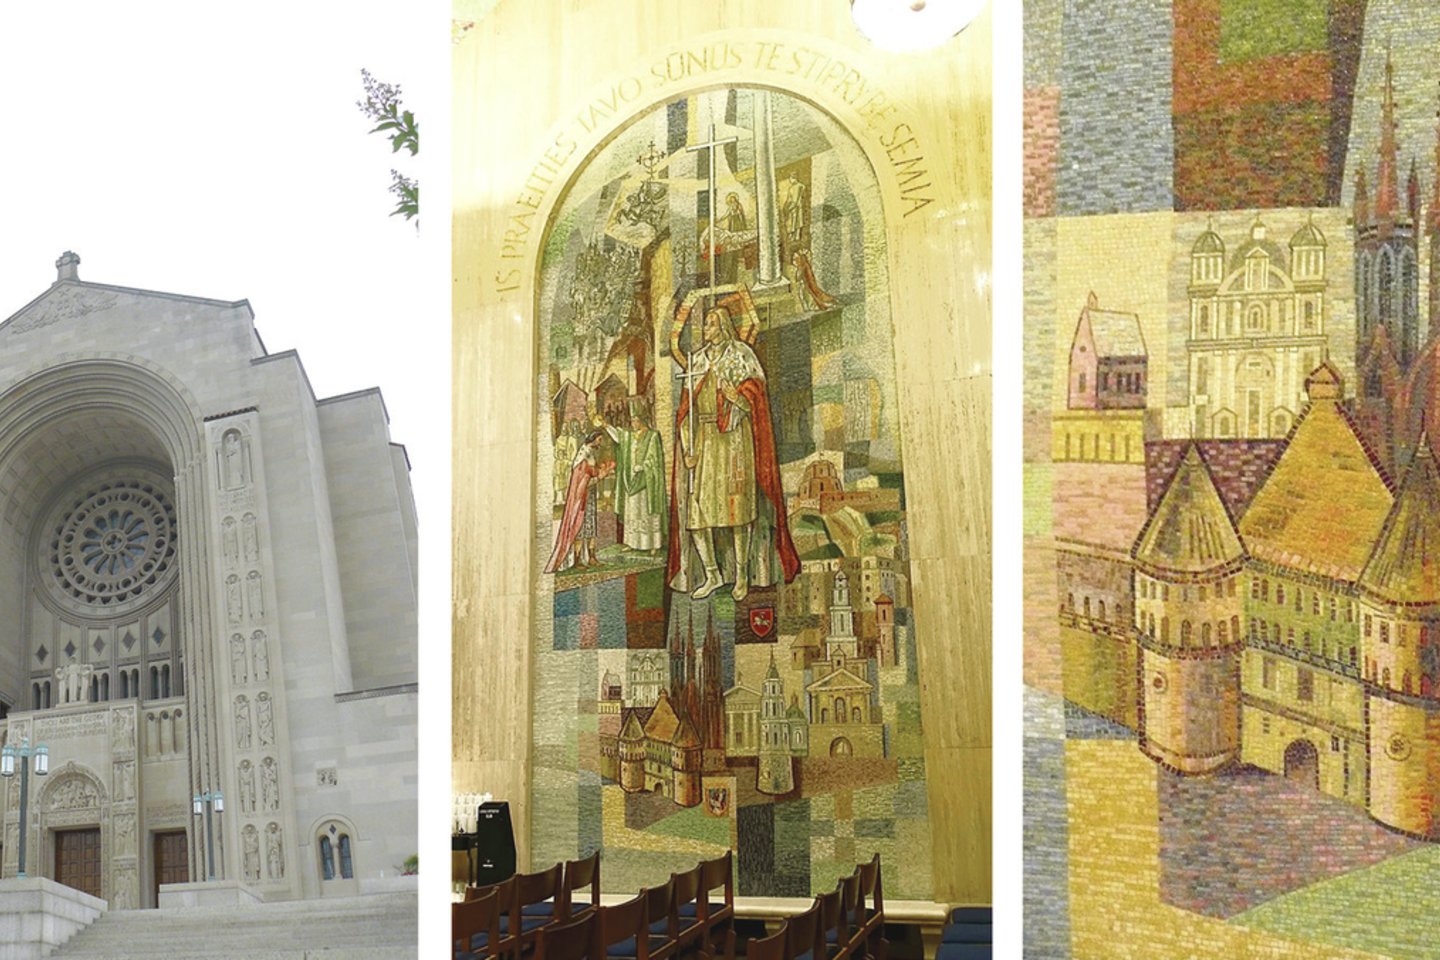 Katalikų bazilikoje (nuotr. kairėje) Vašingtone esančioje lietuviškoje koplyčioje yra daug su mūsų šalimi susijusių kūrinių. Juose – Mindaugo krikštas, Kryžių kalnas, Vytis, Trakų, Pažaislio ir Vilniaus vaizdai.<br>R.Stankevičiūtės nuotr.